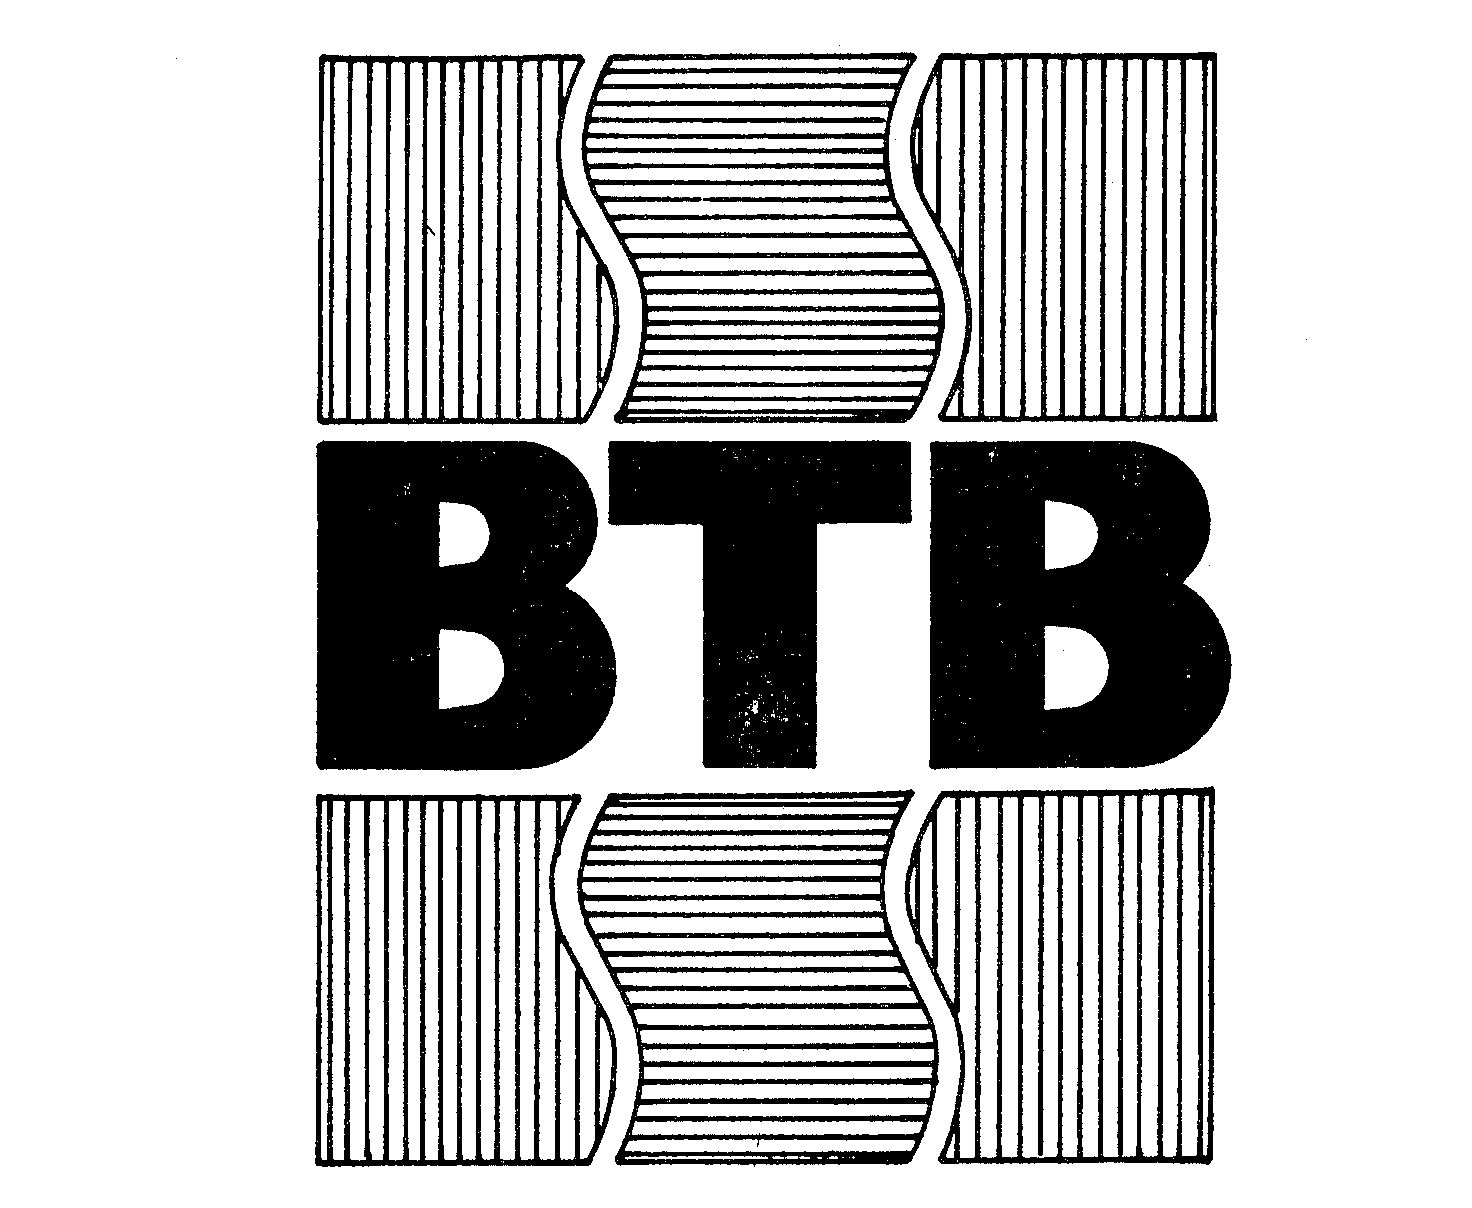 Trademark Logo BTB